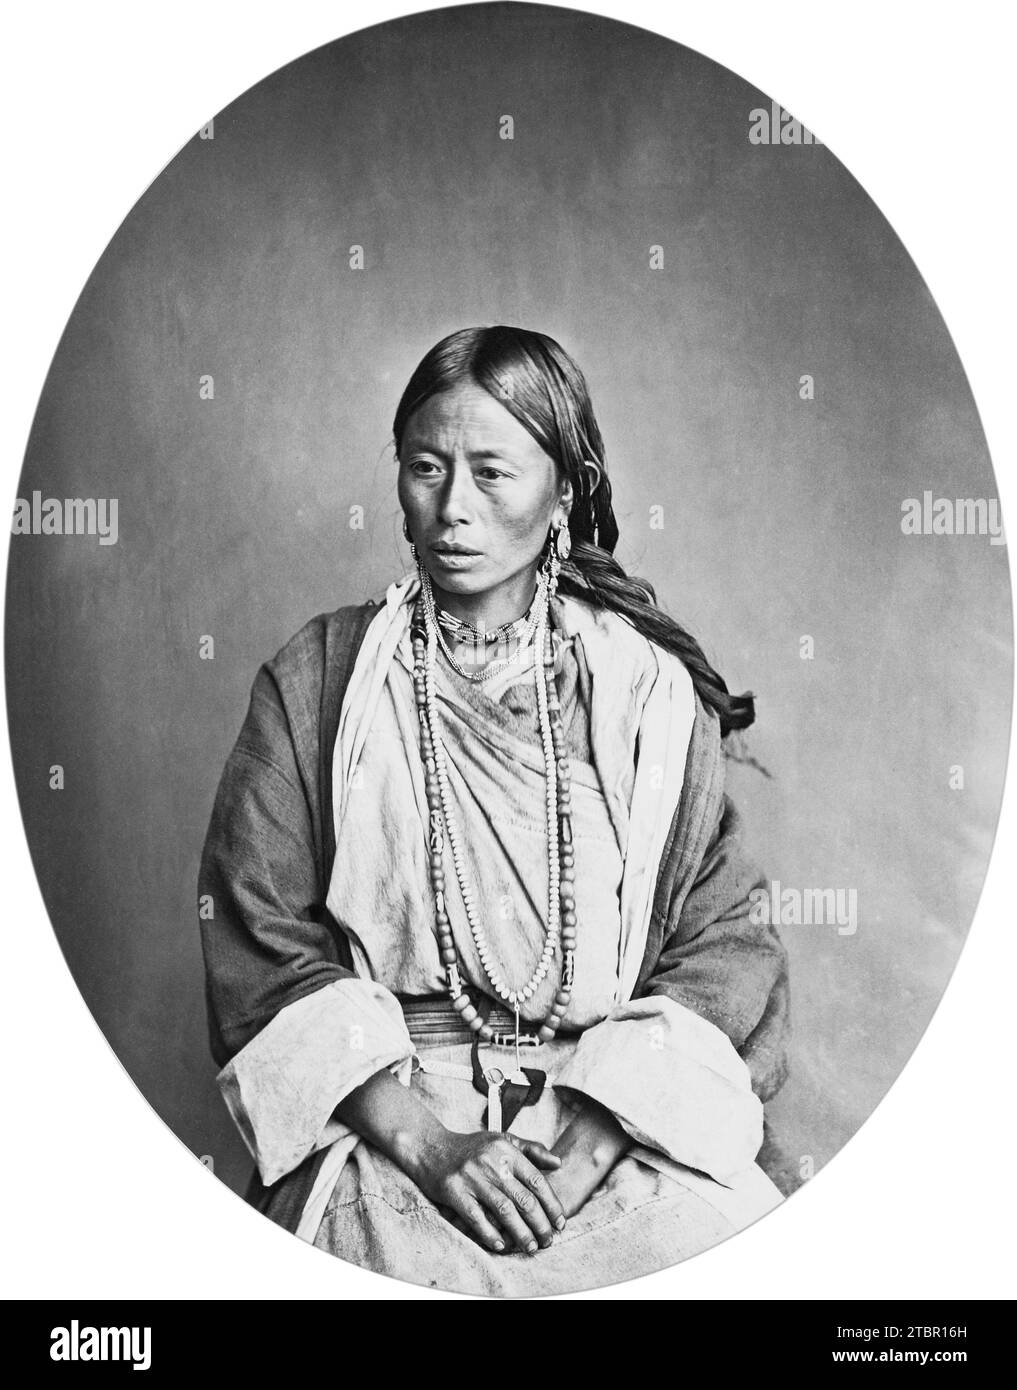 Femme indienne avec collier ; Fabricant inconnu ; environ 1866 ; imprimé argent albumen. Portrait d'une femme d'une tribu himalayenne, assise et légèrement face au Banque D'Images